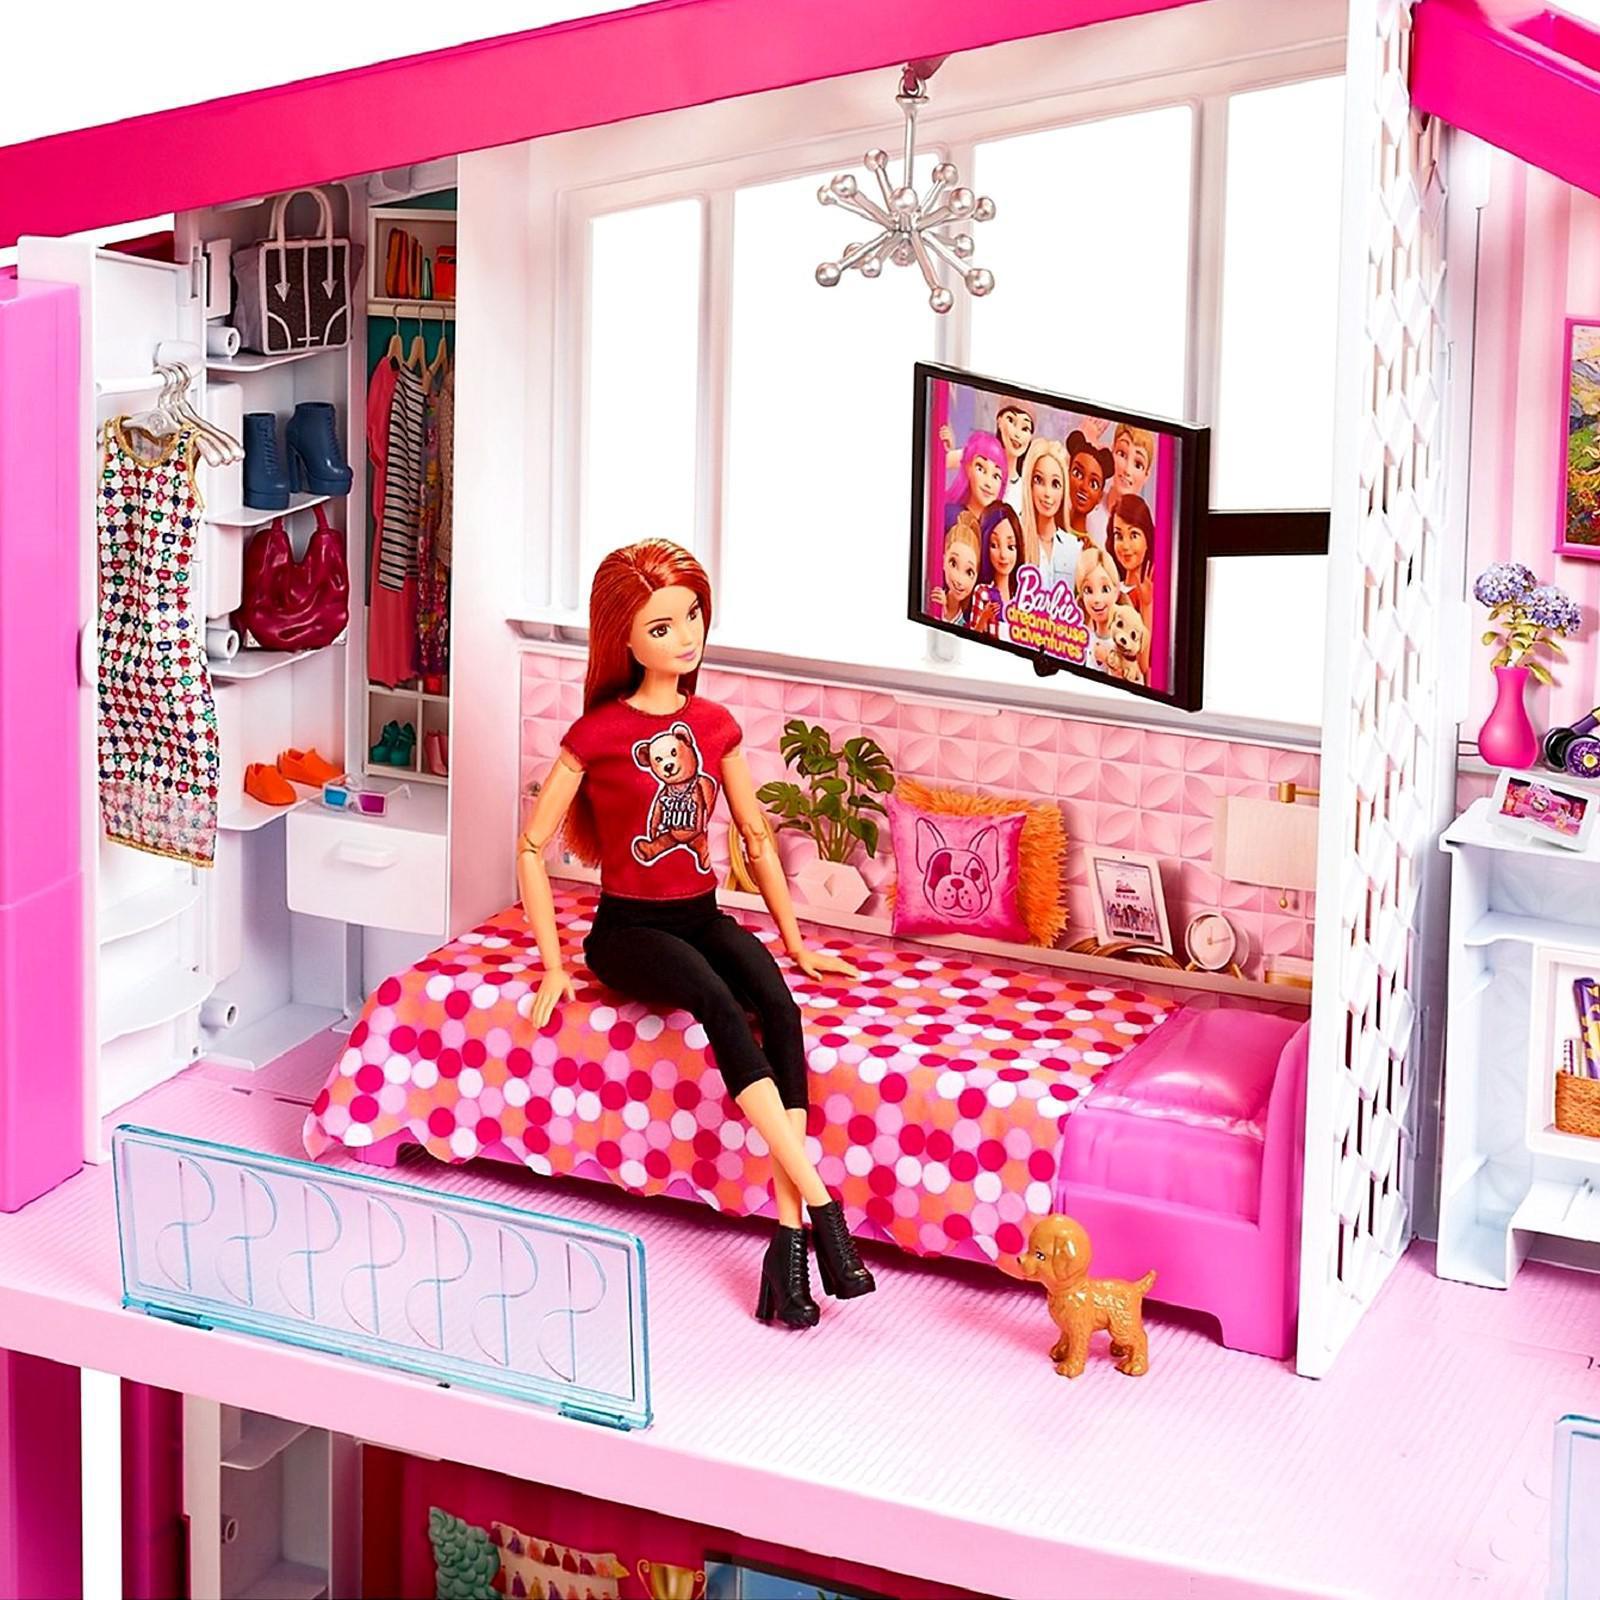 Барби дом 1. Кукла Барби Дрим Хаус. Barbie дом мечты fhy73. Дом Барби Дрим Хаус. Дом для куклы Барби fhy73.